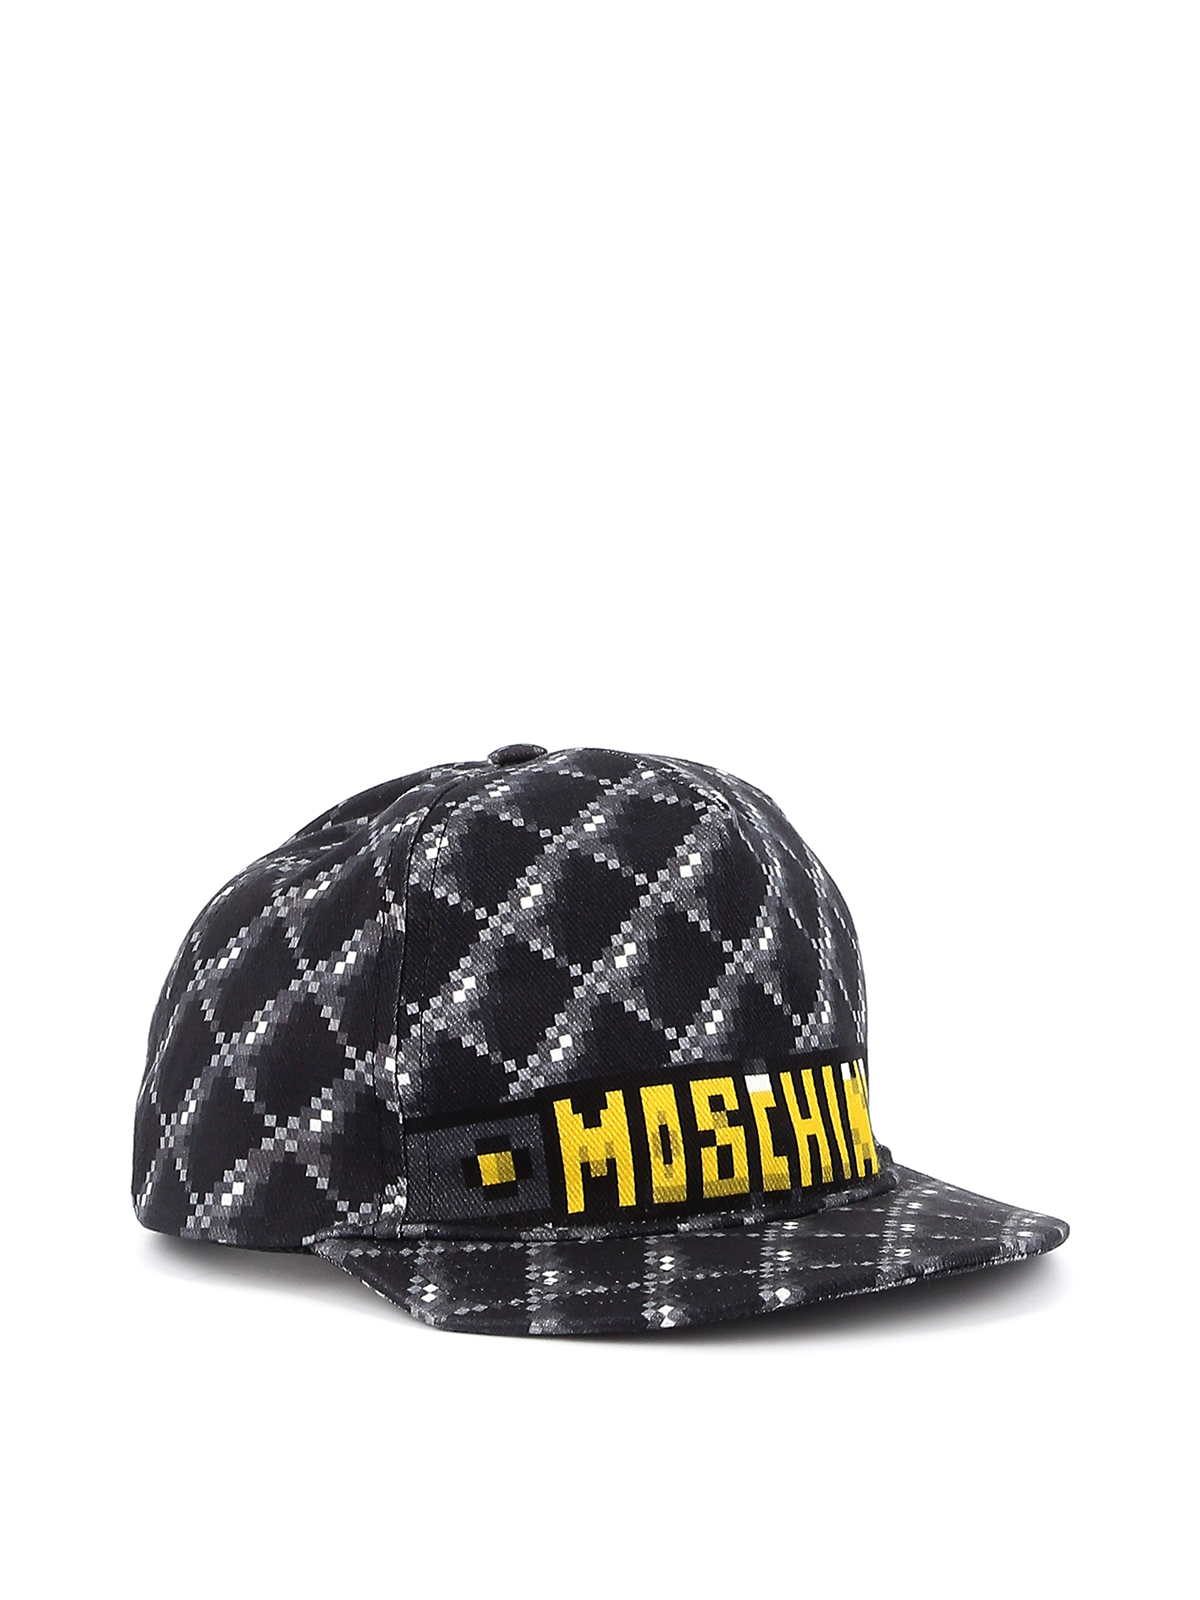 Hats & caps Moschino - Pixel baseball cap - 927982531555 | iKRIX.com